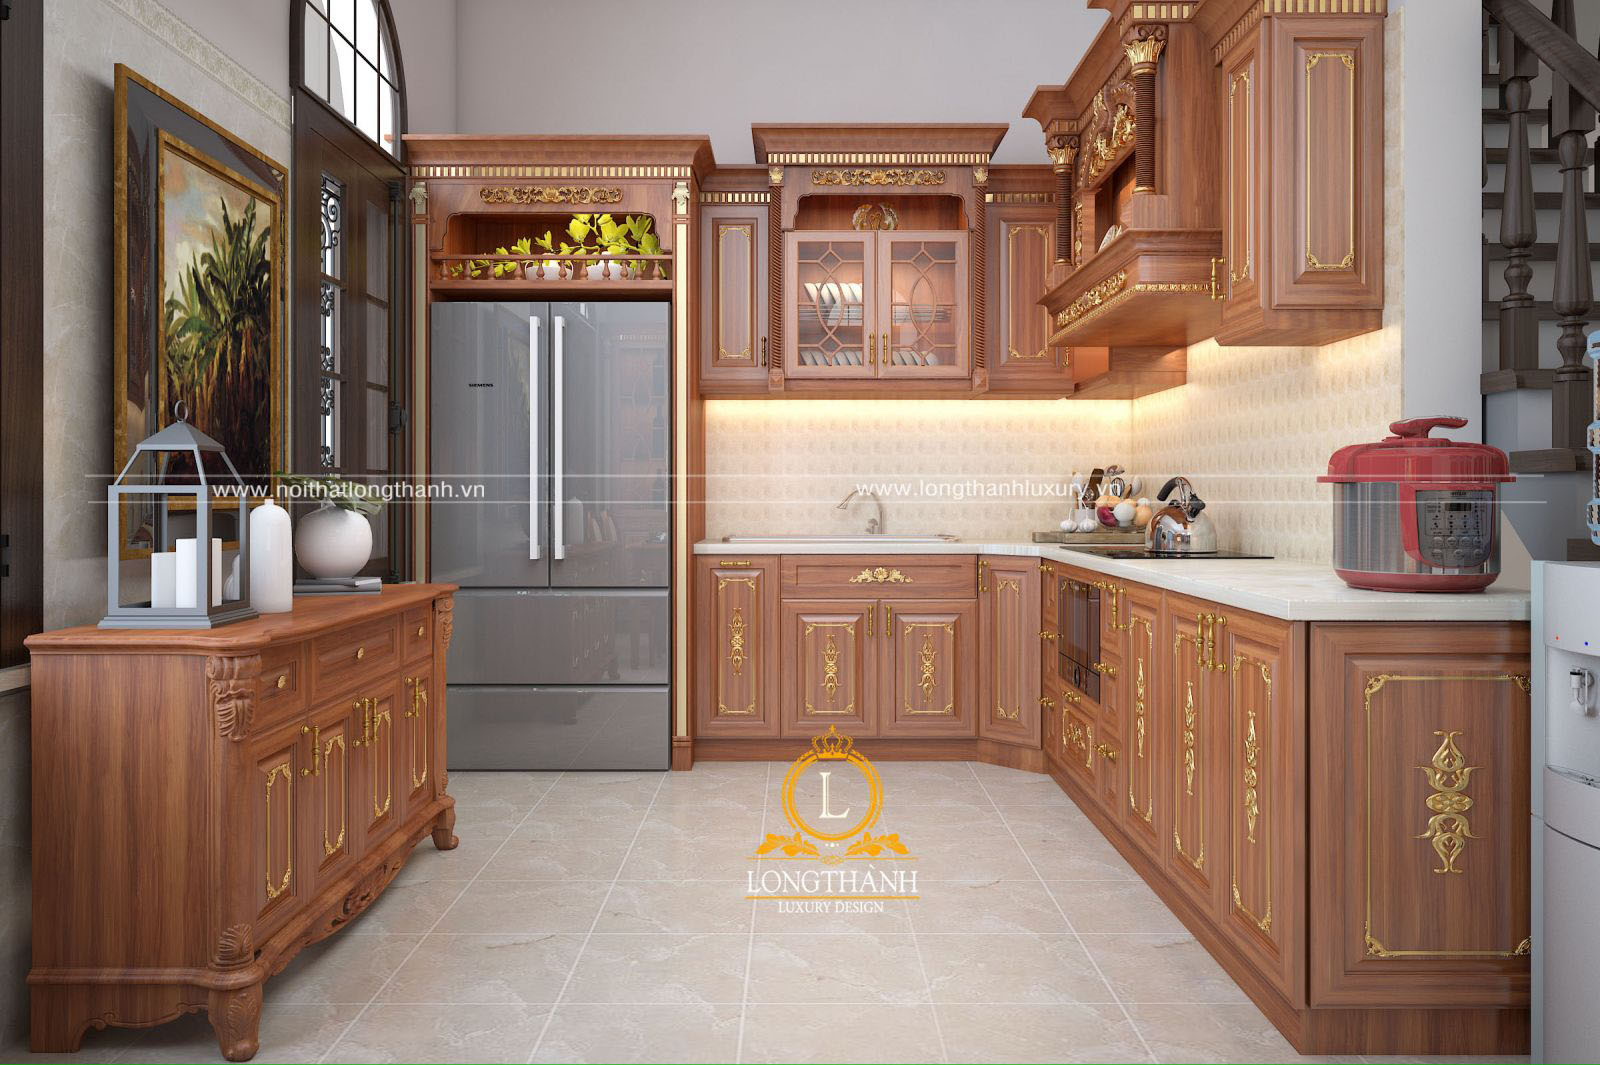 Hiểu sâu hơn về thiết kế tủ bếp thông minh và tiện lợi nhất bằng cách xem hình ảnh. Hãy tham khảo các mẫu tủ bếp đẹp mắt và chức năng hoàn hảo để có ý tưởng cho ngôi nhà của bạn.